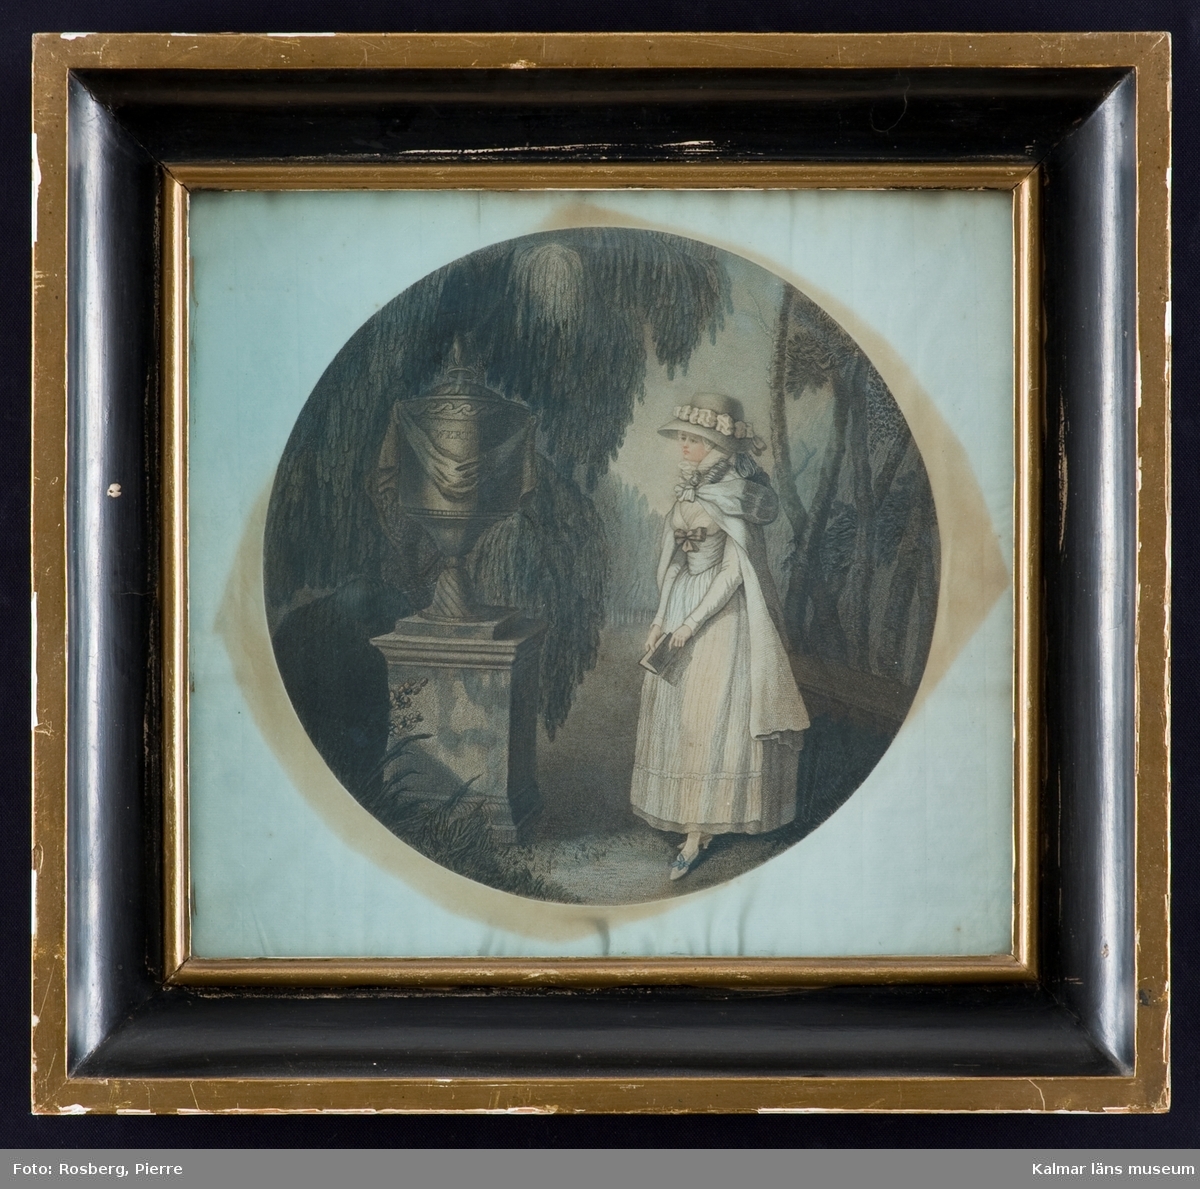 Motivet föreställer en ung dam klädd i 1700-talskläder. Hon bär en bok i handen och står framför ett podium med en urna.